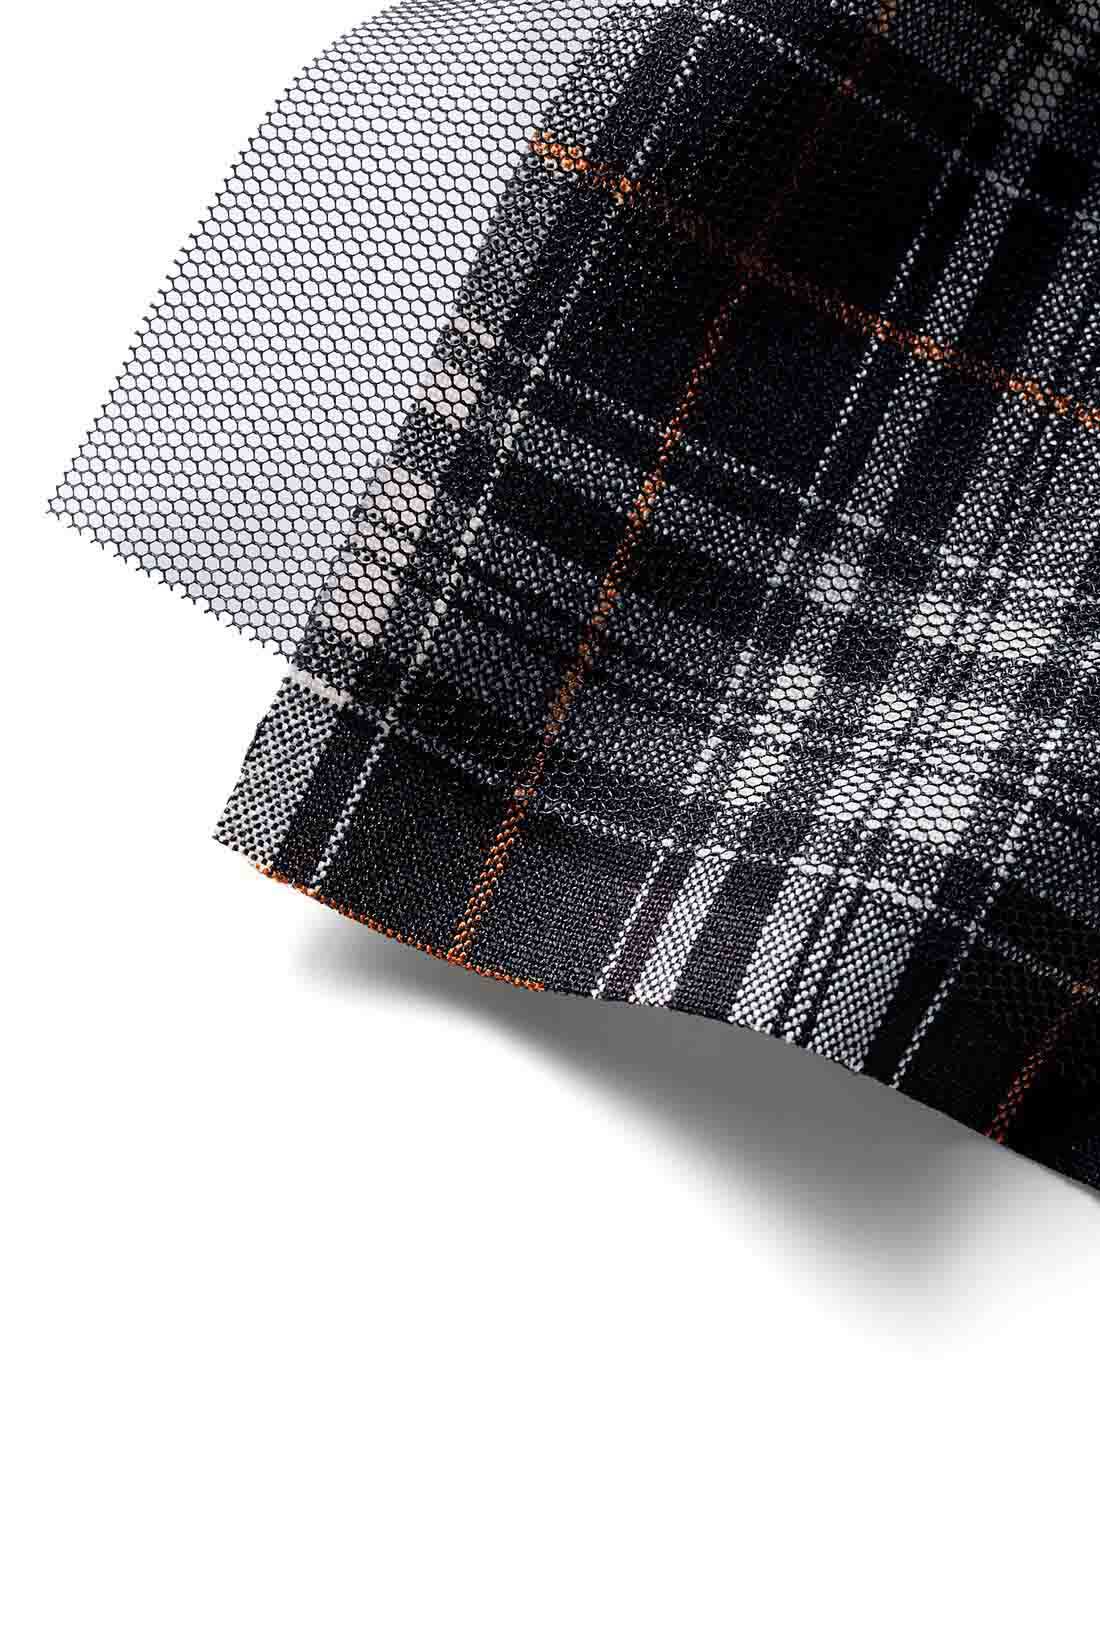 MEDE19F|MEDE19F　チュールレイヤードのチェック柄ロングスカート〈ブラック〉|綿タッチの布はくに、張りのあるチュールをレイヤード。